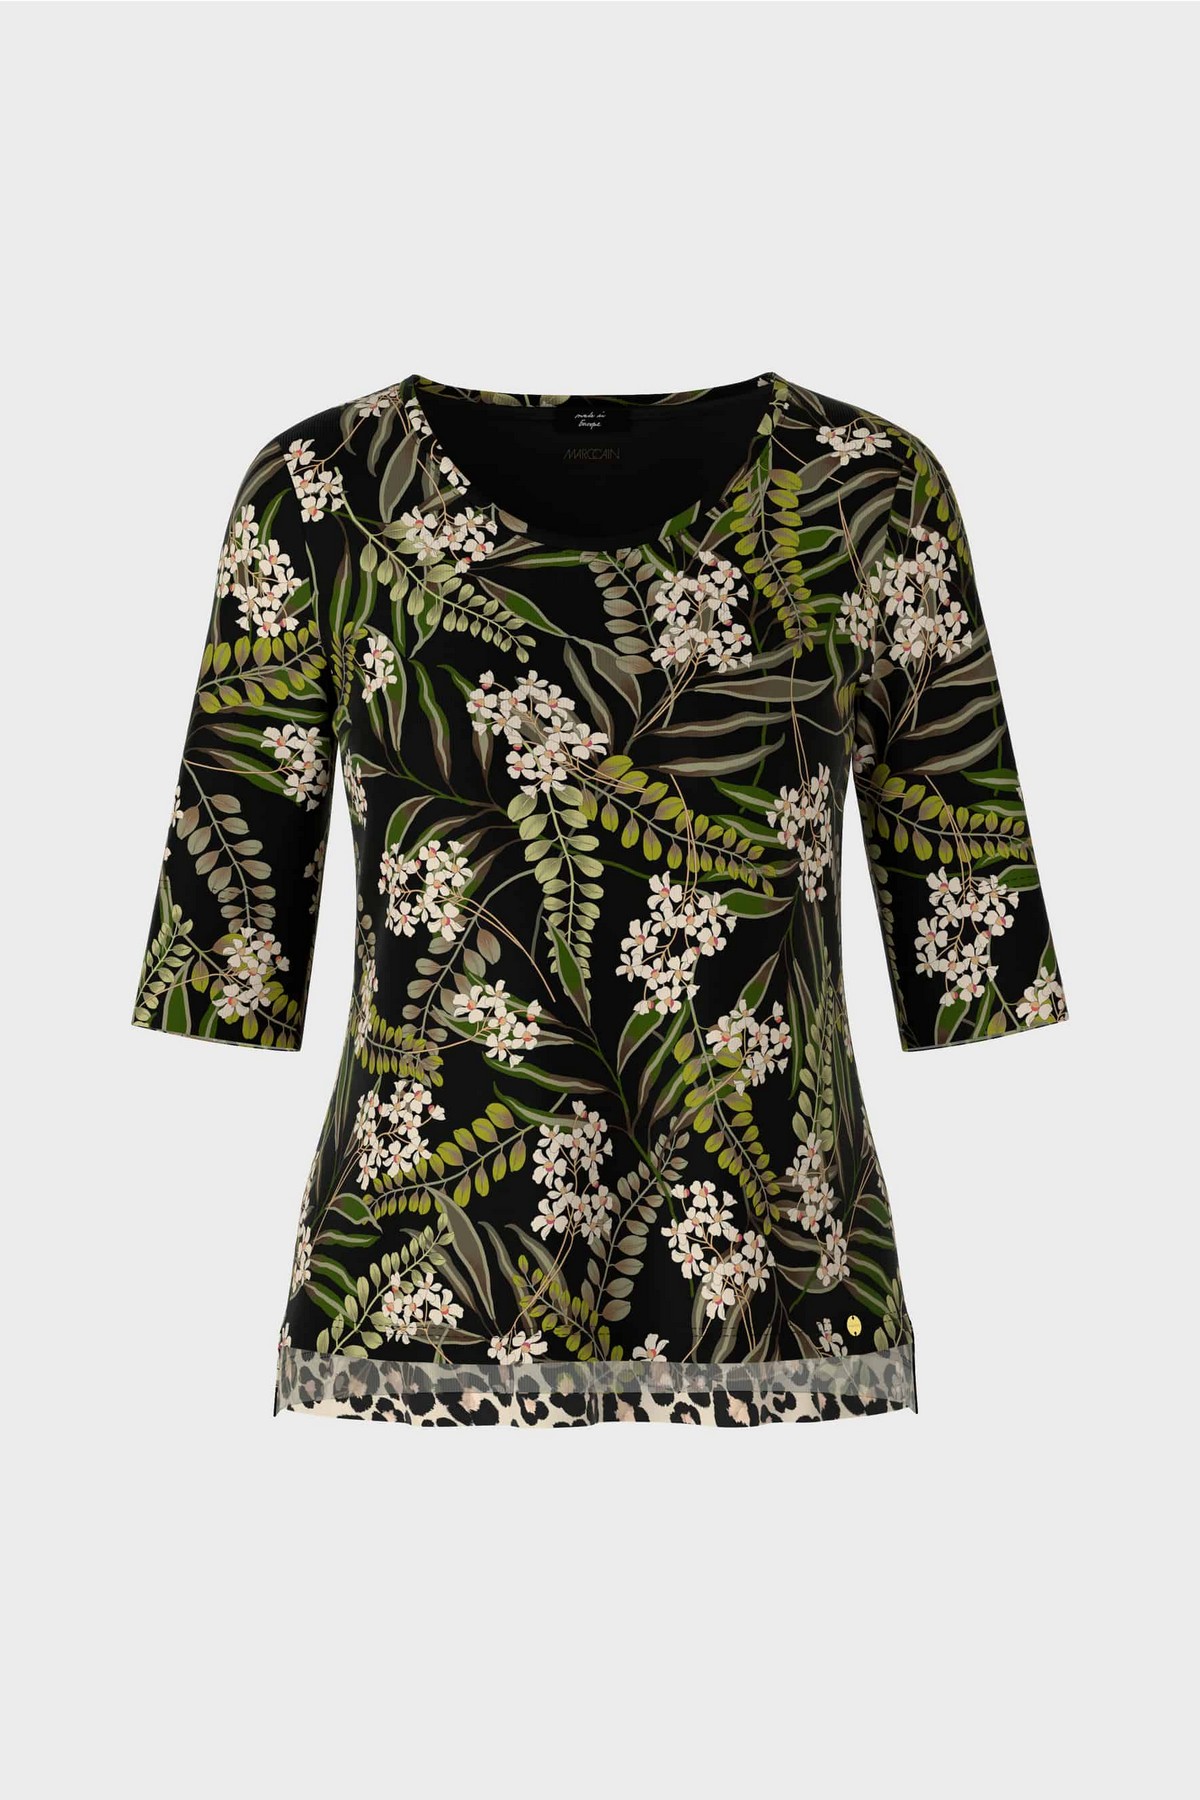 T-shirt floral print in de kleur zwart groen van het merk Marc Cain Collections